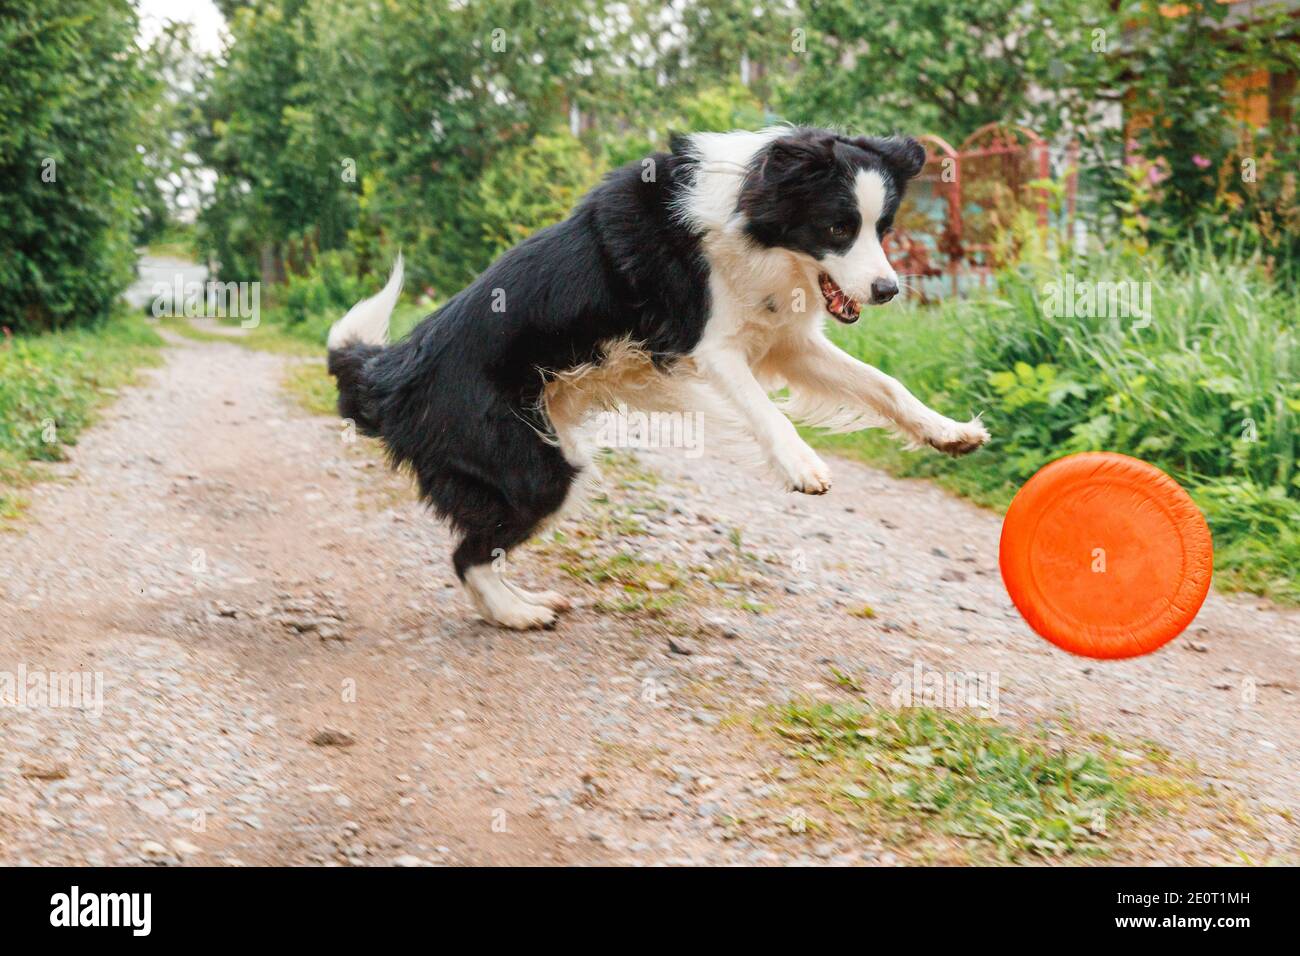 Outdoor-Porträt von niedlichen lustigen Welpen Hund Grenze Collie Fang Spielzeug in der Luft. Hund spielt mit fliegender Scheibe. Sportliche Aktivität mit Hund im Park draußen Stockfoto